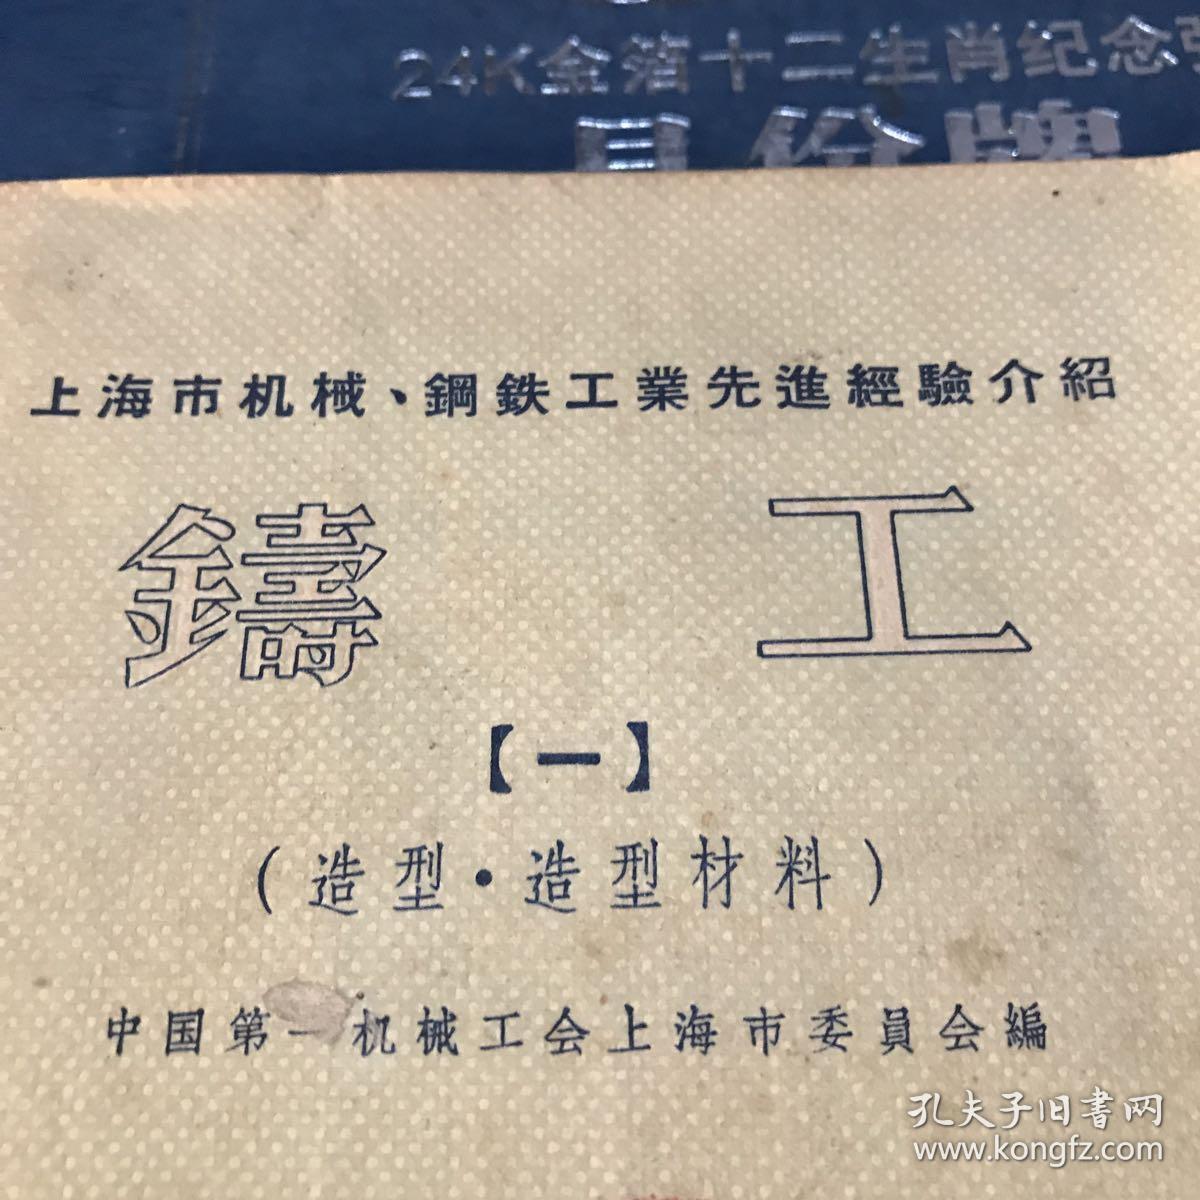 中国第一机械工会上海市委员会编 造型造型材料